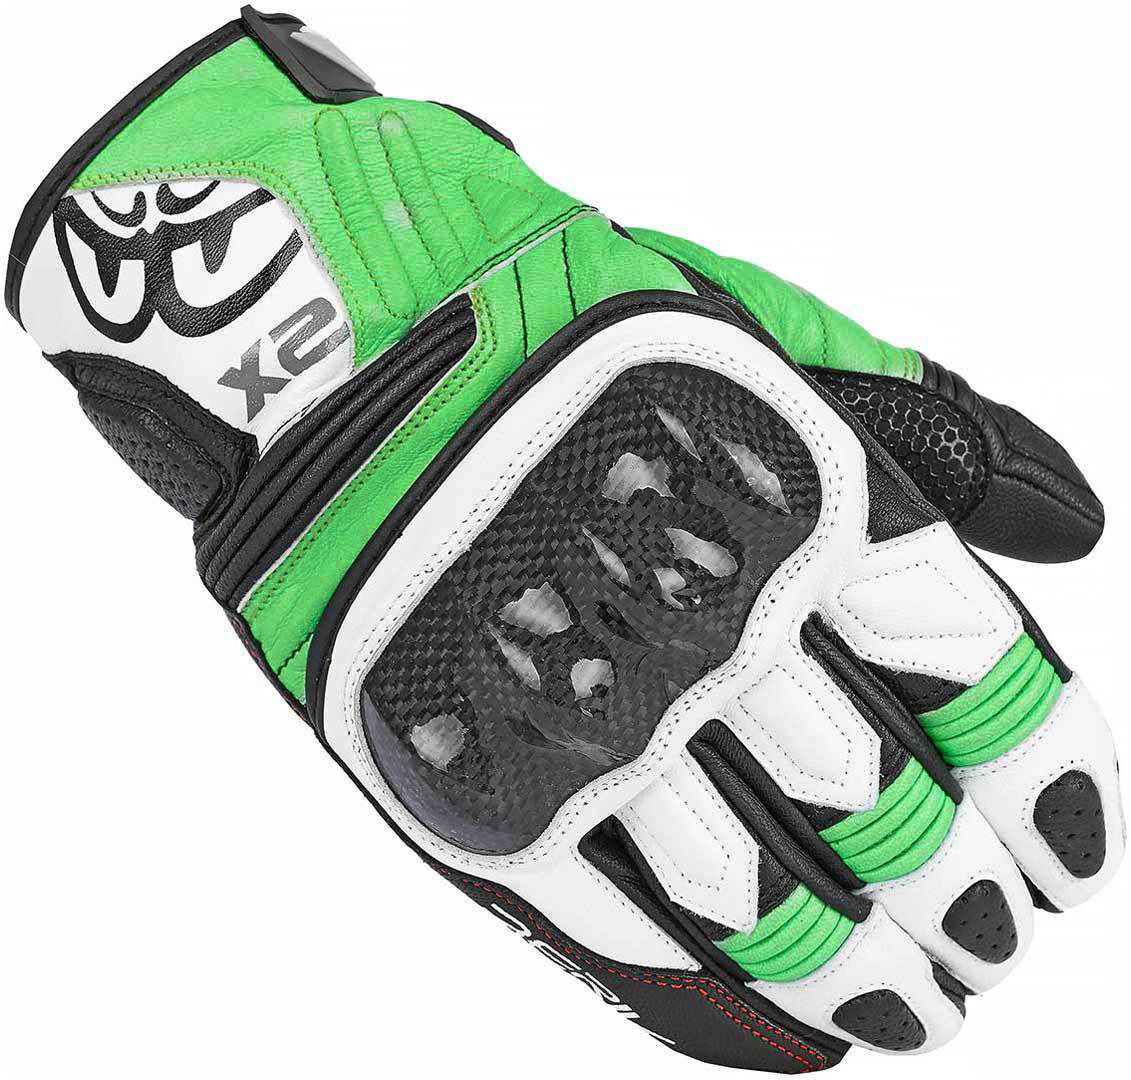 Мотоциклетные перчатки Berik NexG с защитой от стирания, черный/белый/зеленый мотоциклетные перчатки track plus berik черный белый зеленый